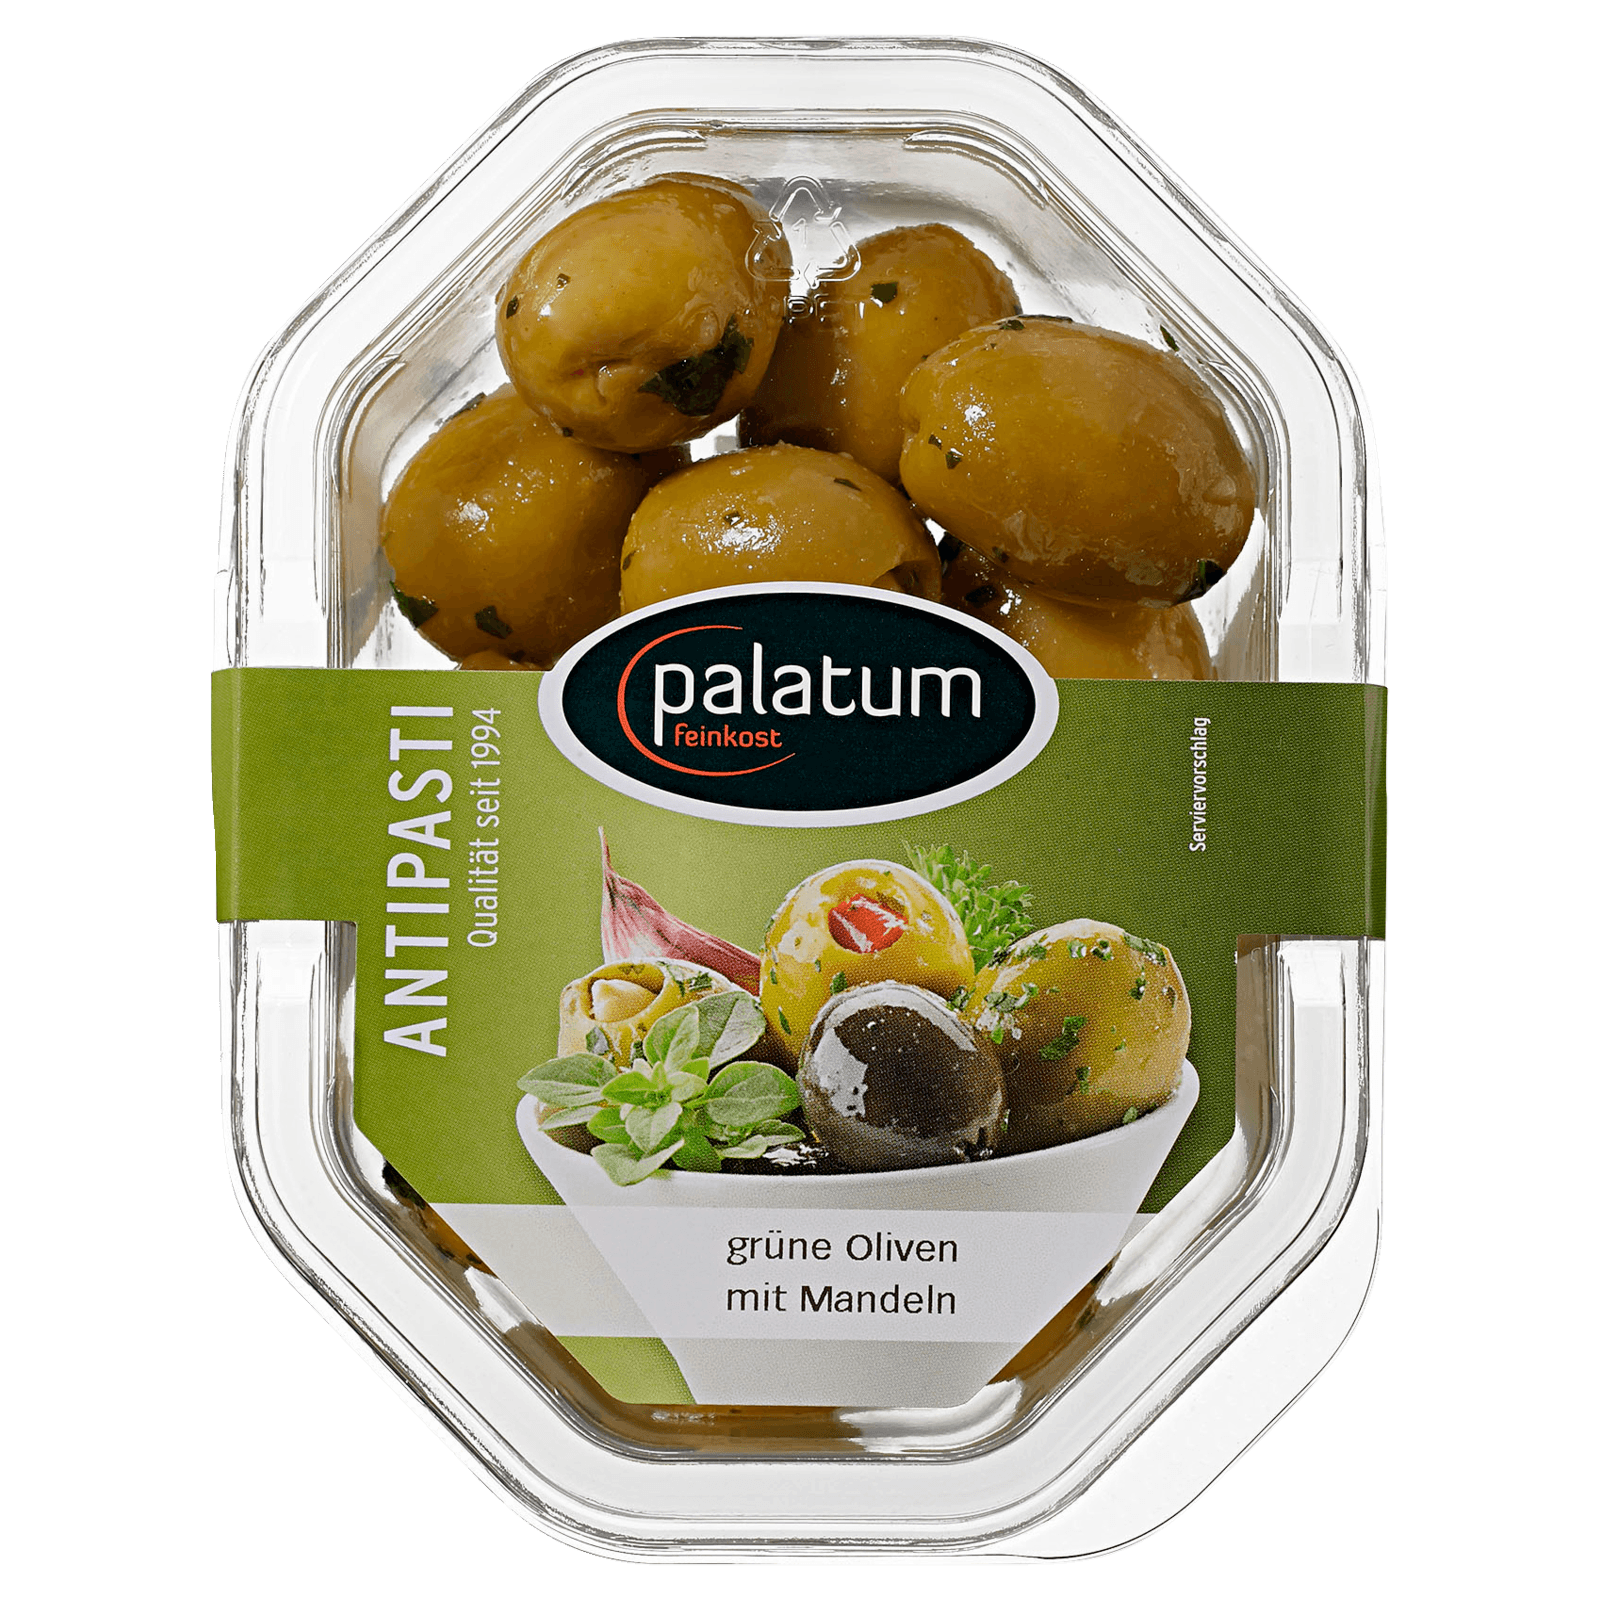 Palatum grüne Oliven mit Mandeln 160g  für 3.19 EUR